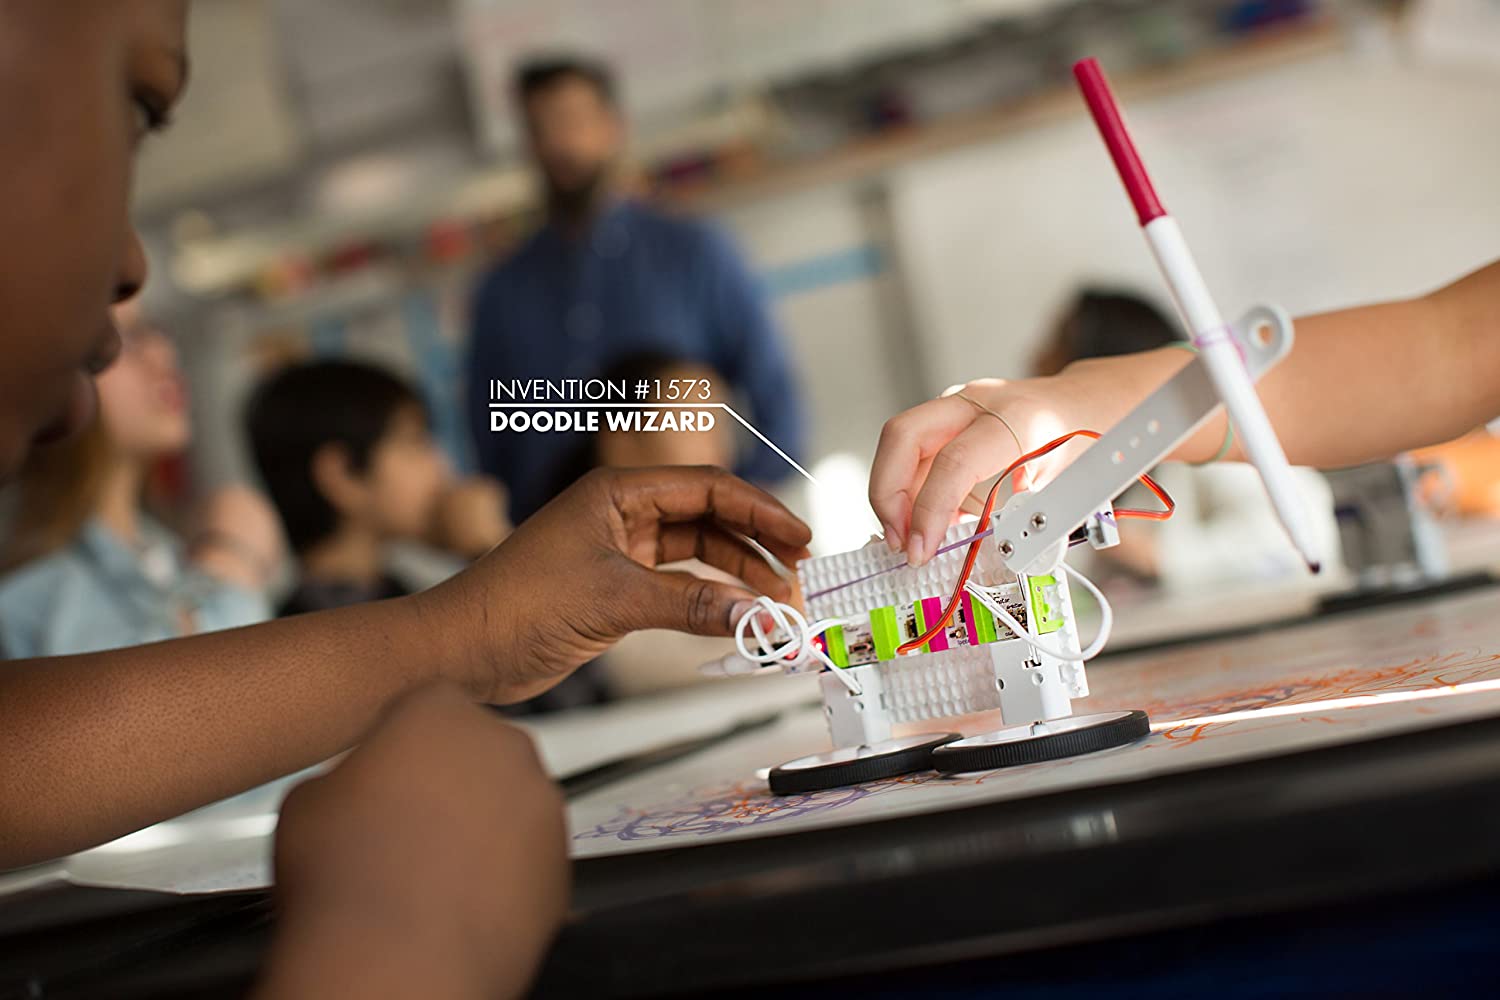 LittleBits STEAM Student Set